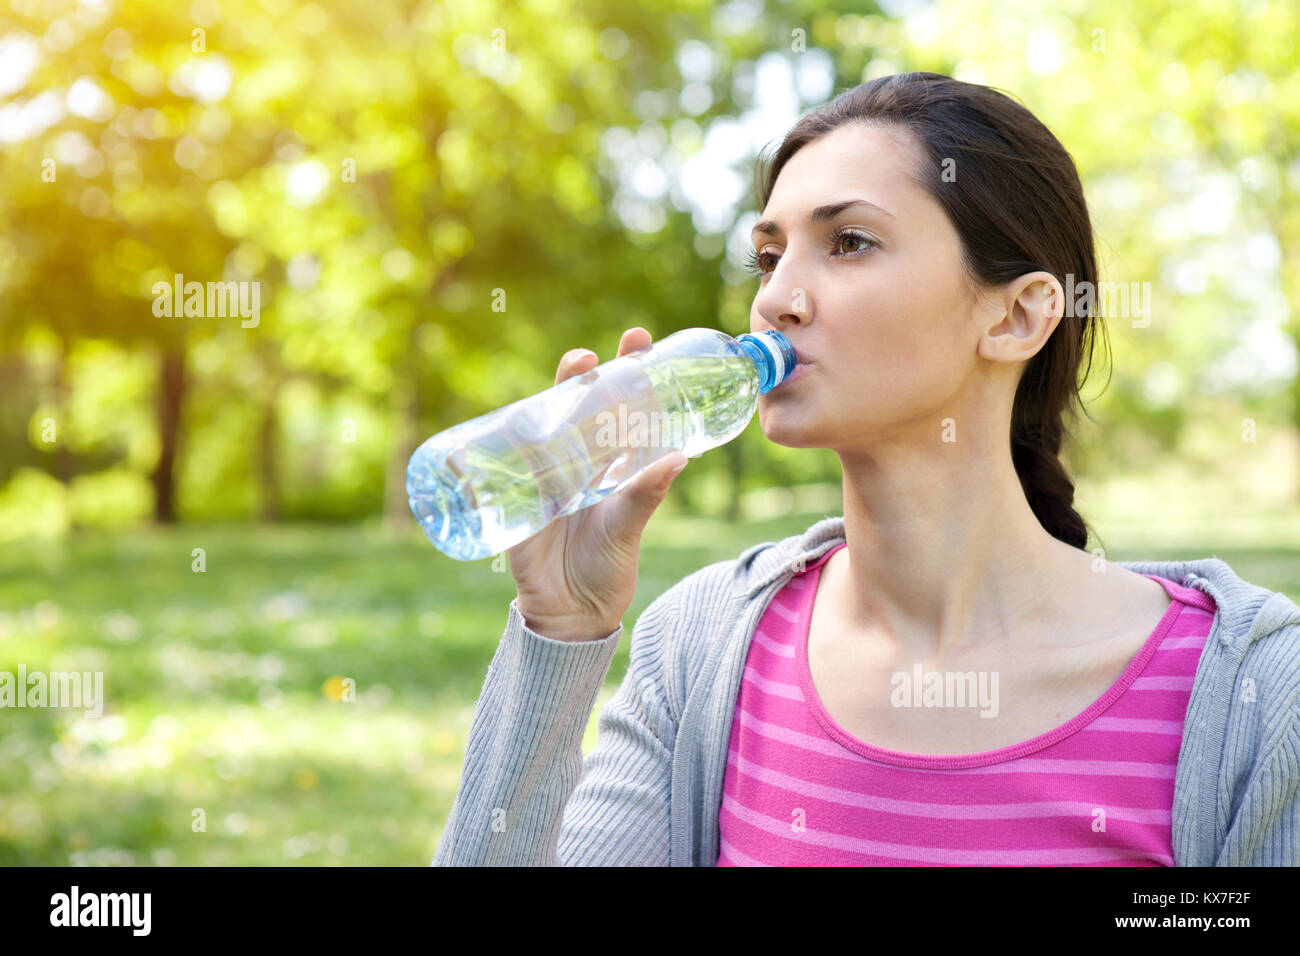 Сироп надо запивать водой. Девушка пьет таблетки. Девушка пьет витамины. Бутылка для воды Drink Water easy healthy Living. Киргизия женщина пьет воду.